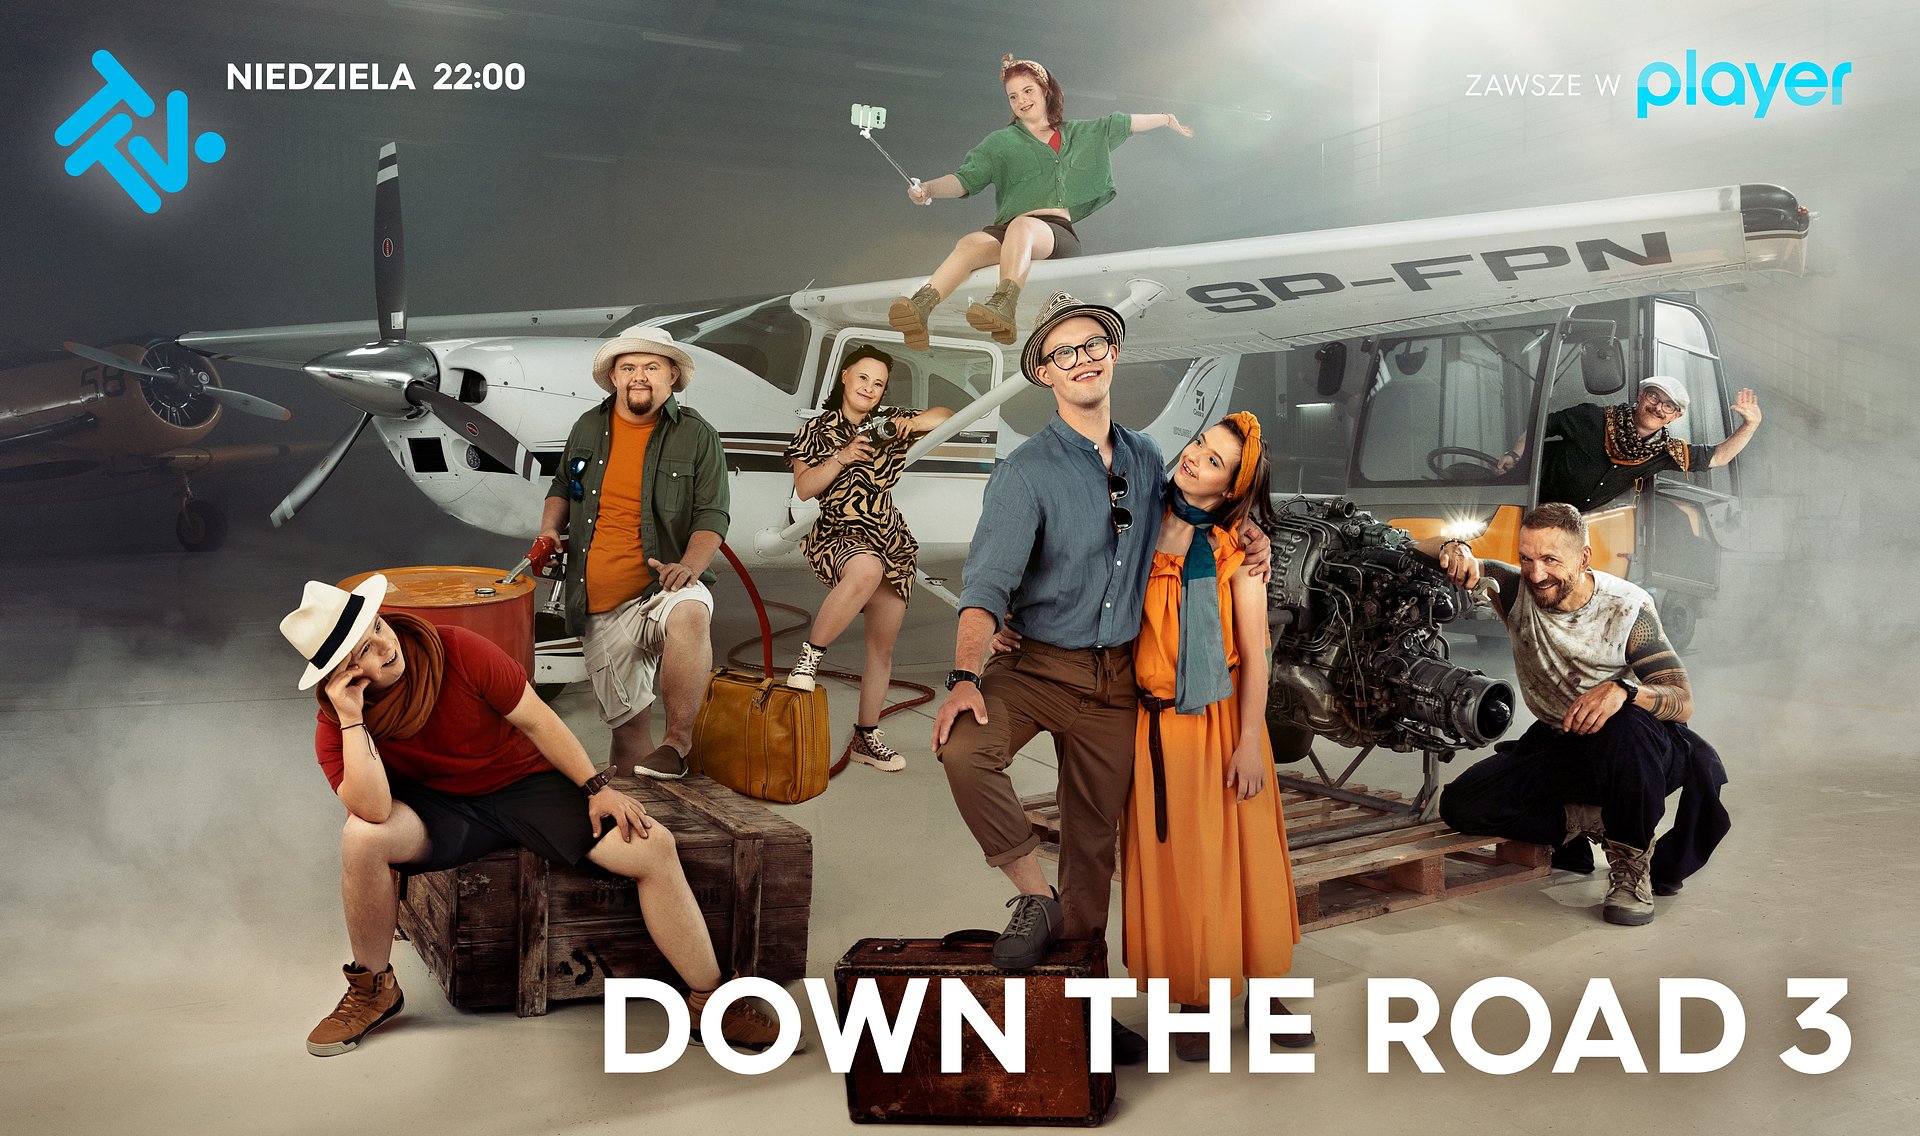 Za chwilę w telewizji ruszy trzeci sezon przełamującego stereotypy programu “Down the road”! Pierwszy odcinek już można oglądać online! Gdzie?